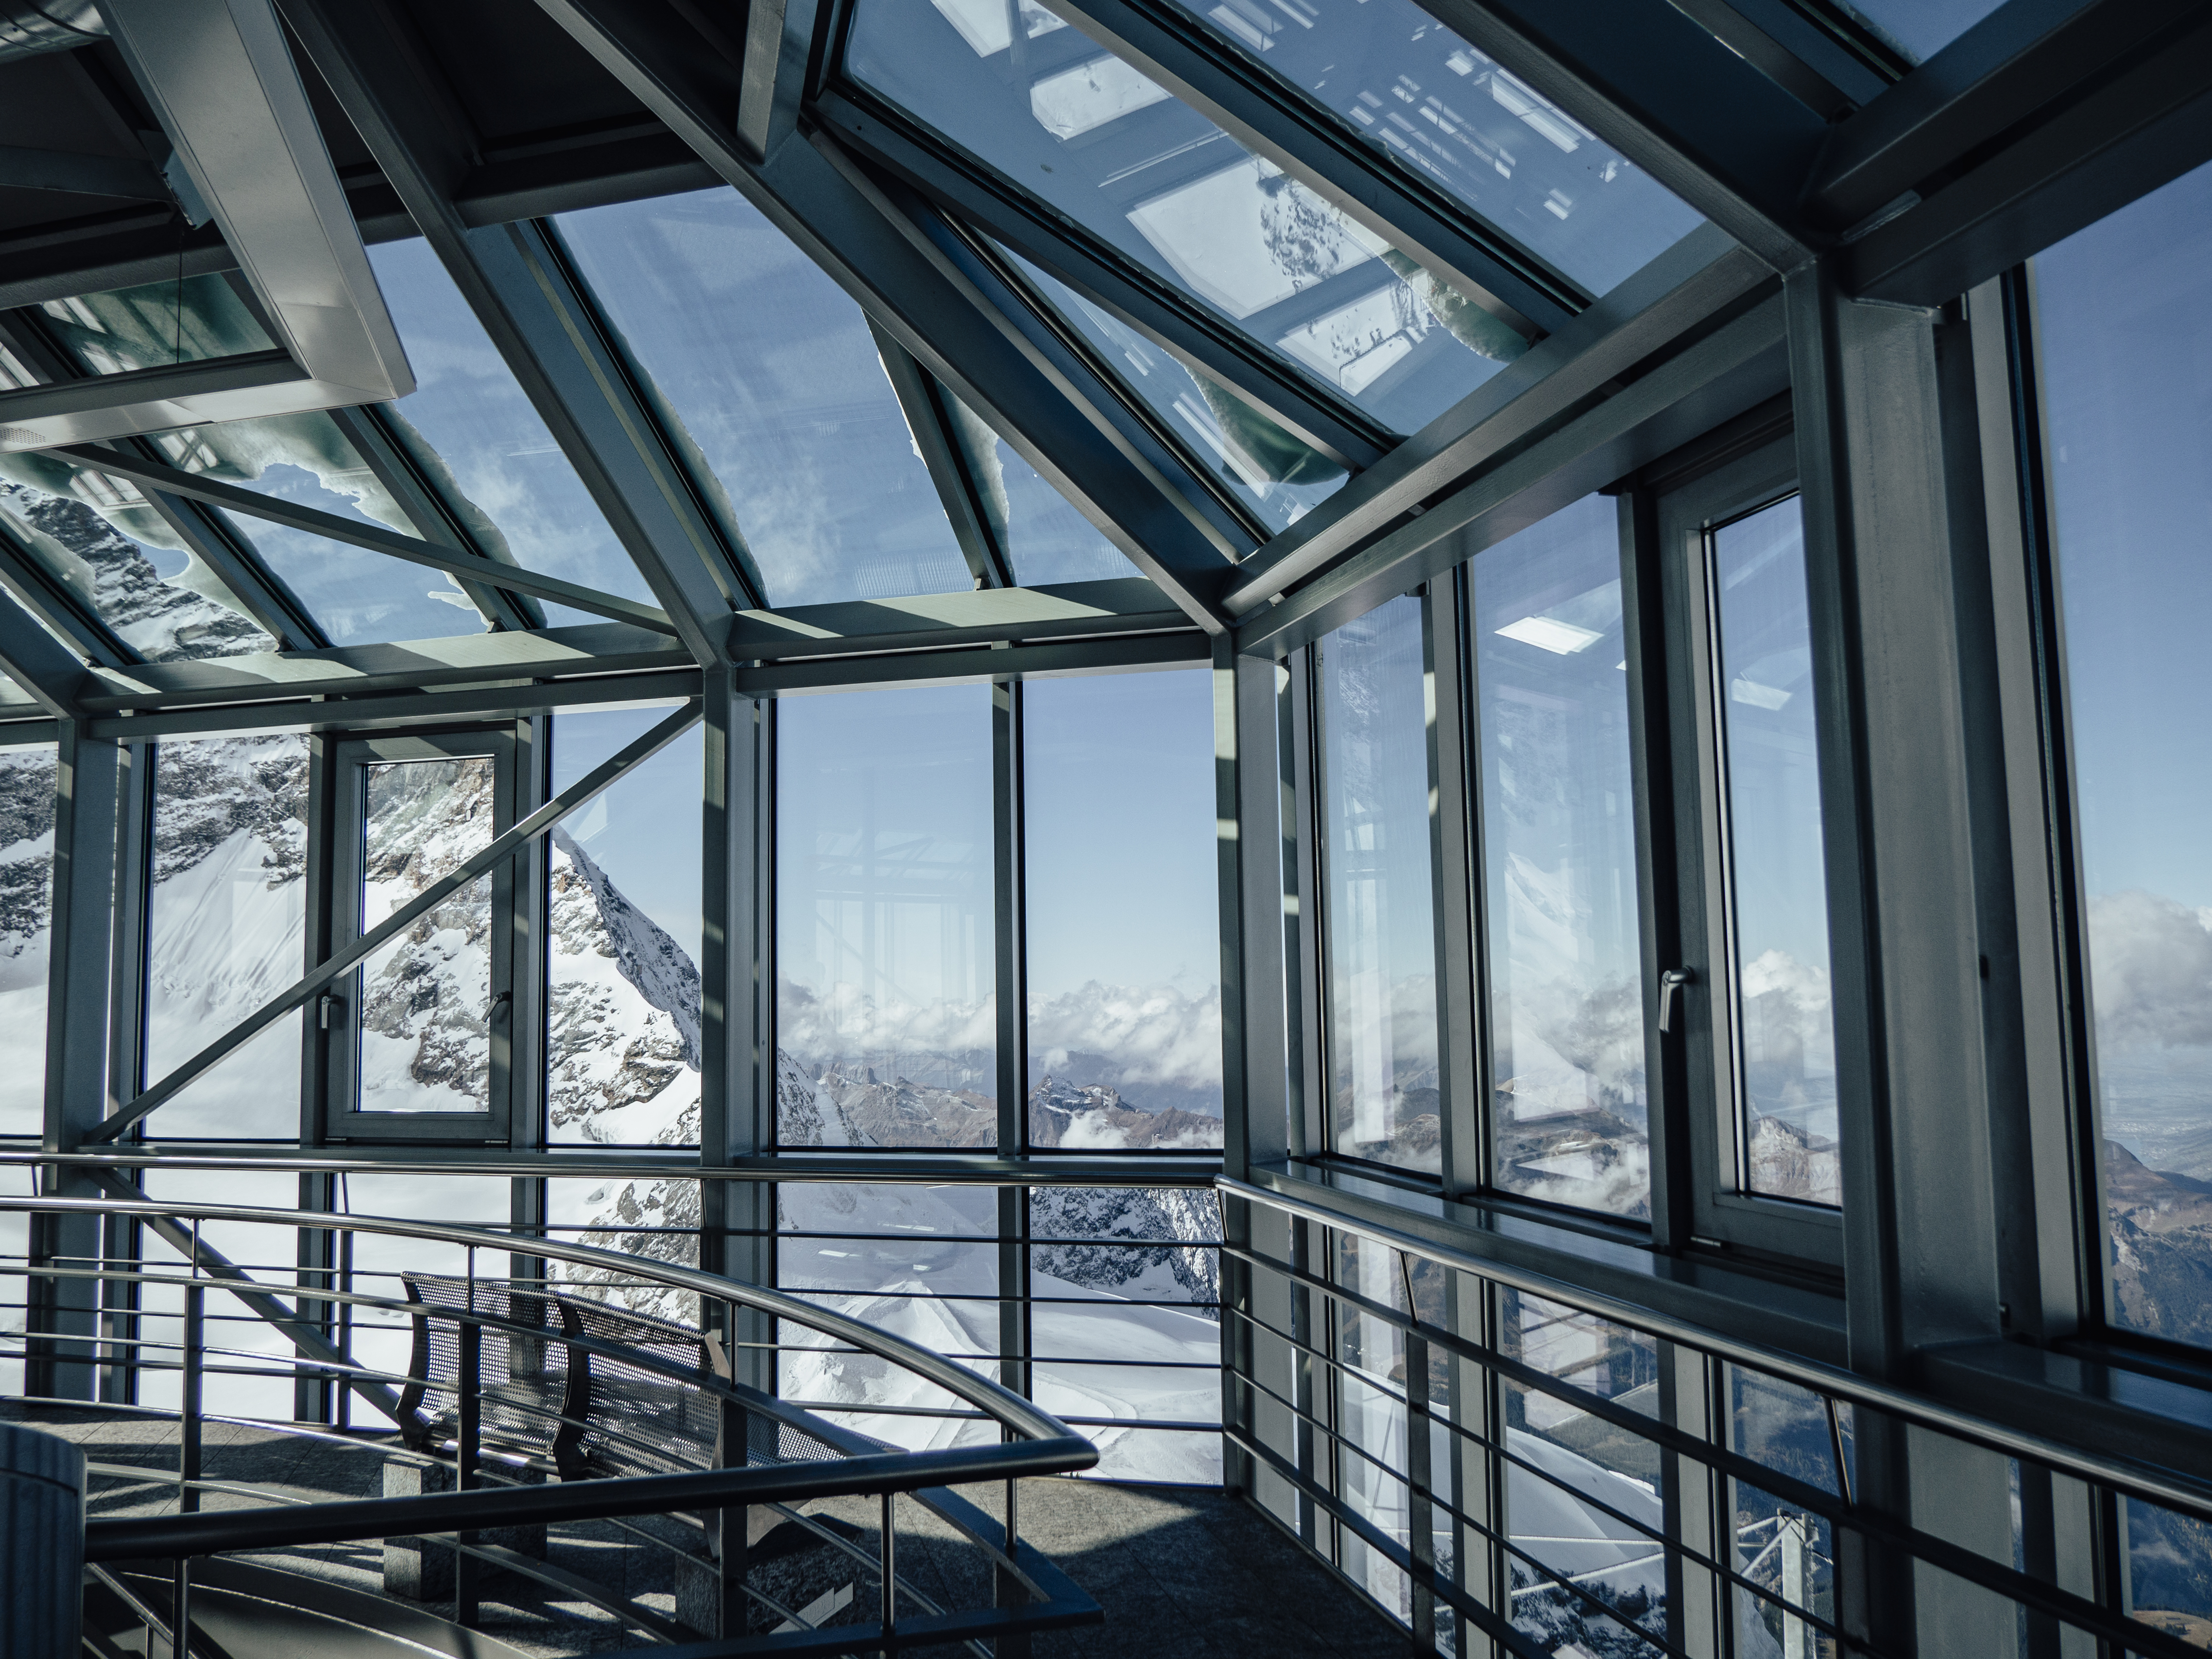 Jungfraujoch, Top of Europe SPHINX OBSERVATORY